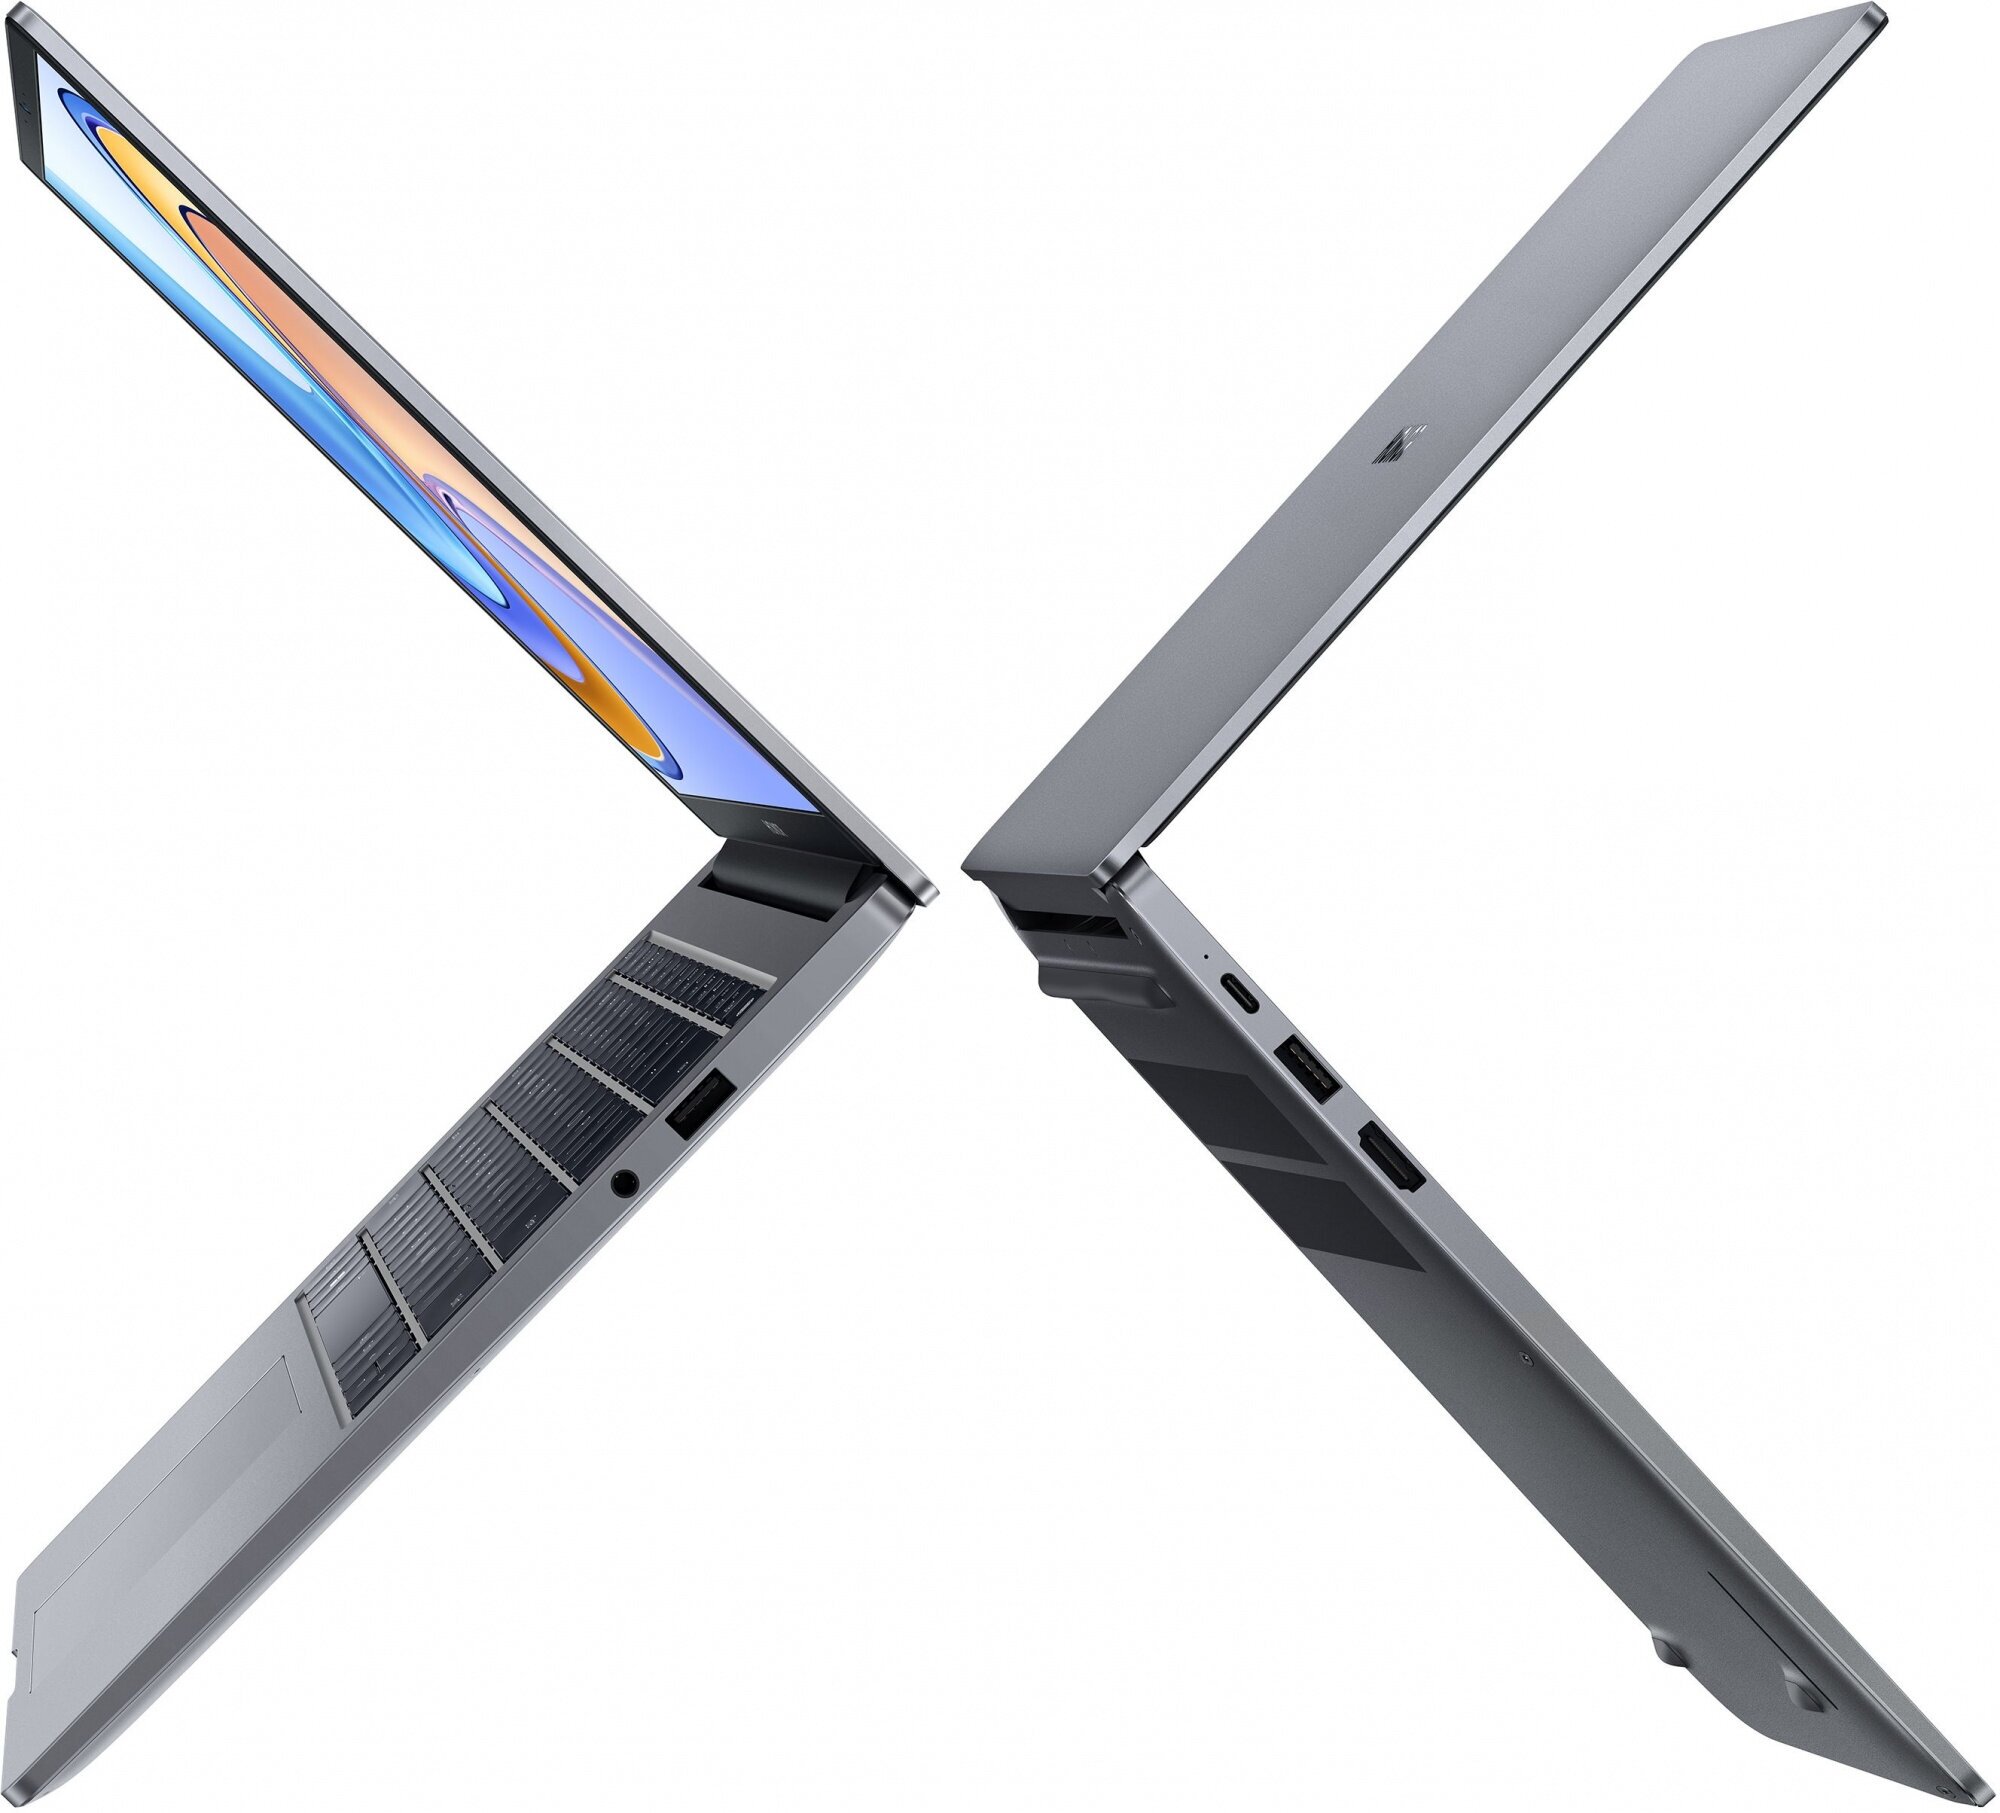 Ноутбук Honor MagicBook X14 (5301AFJX)